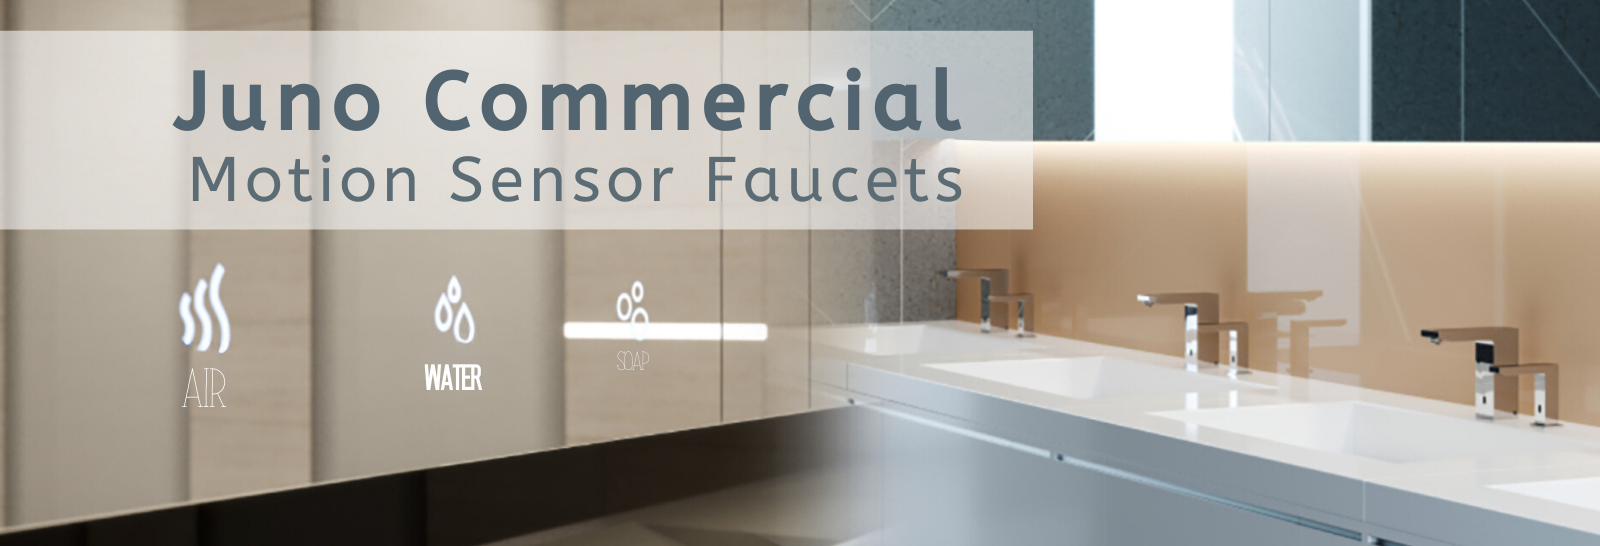 Commercial Motion Sensor Faucet